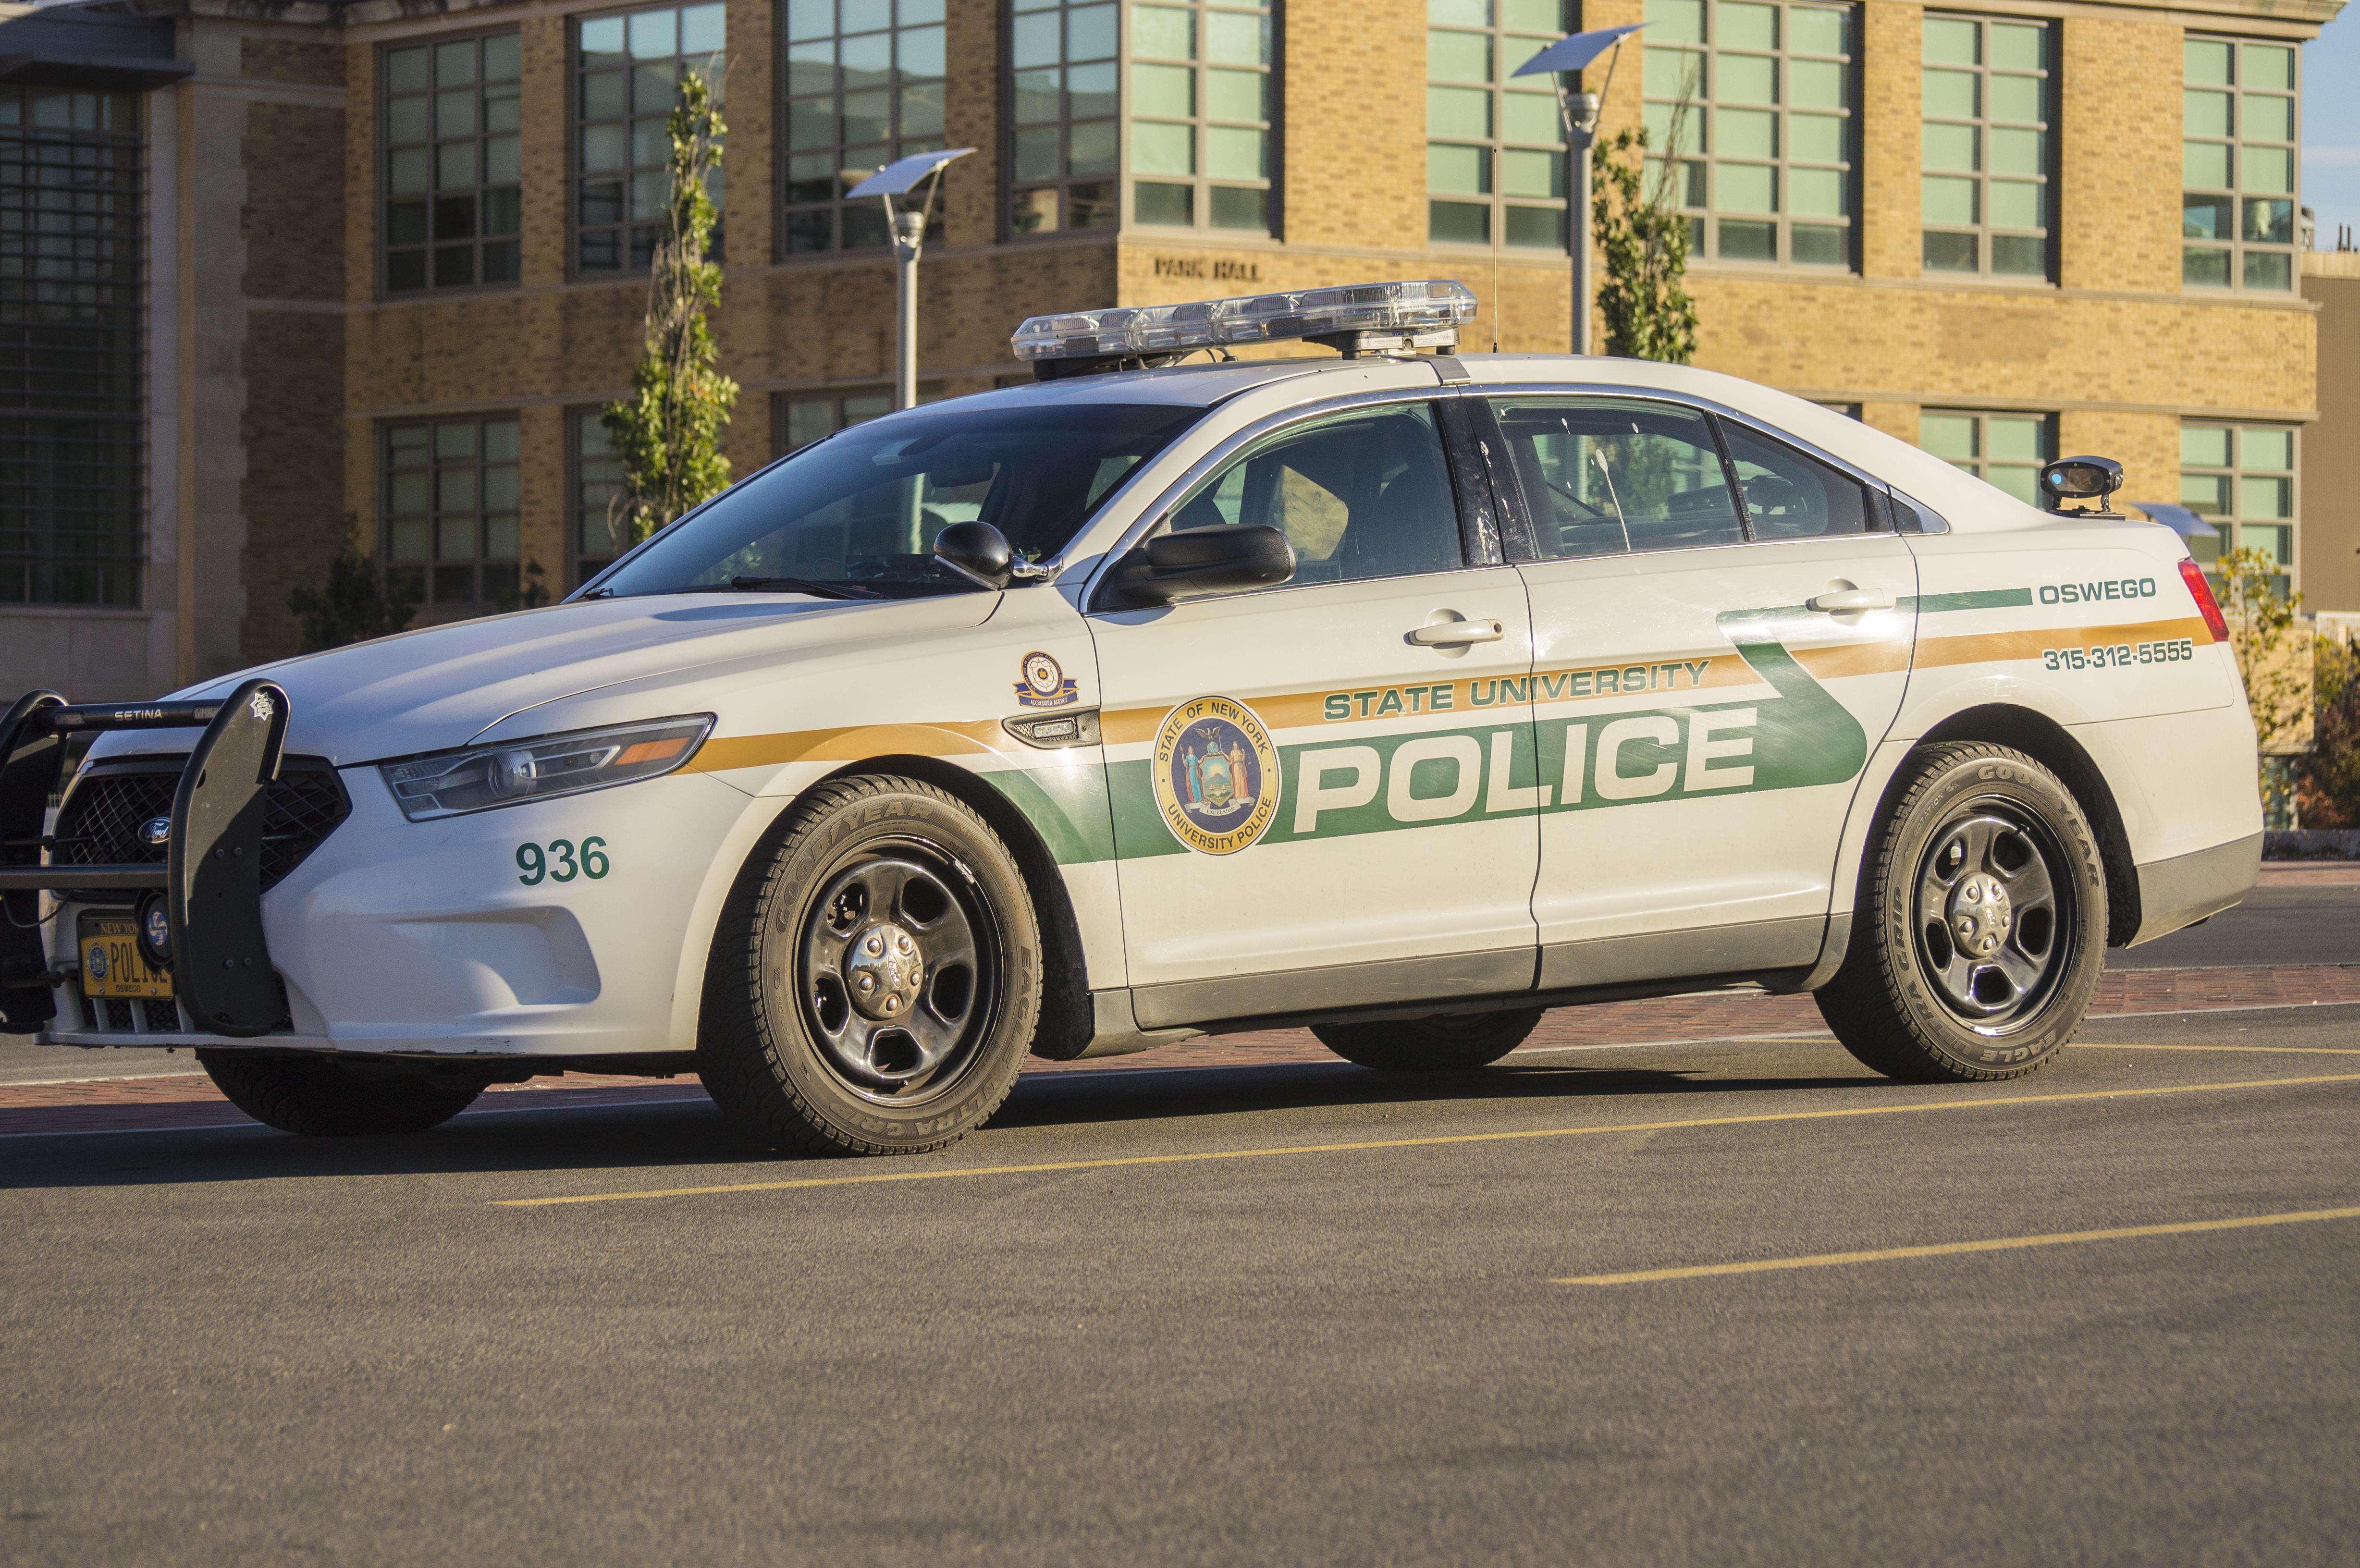 A SUNY Oswego University Police car